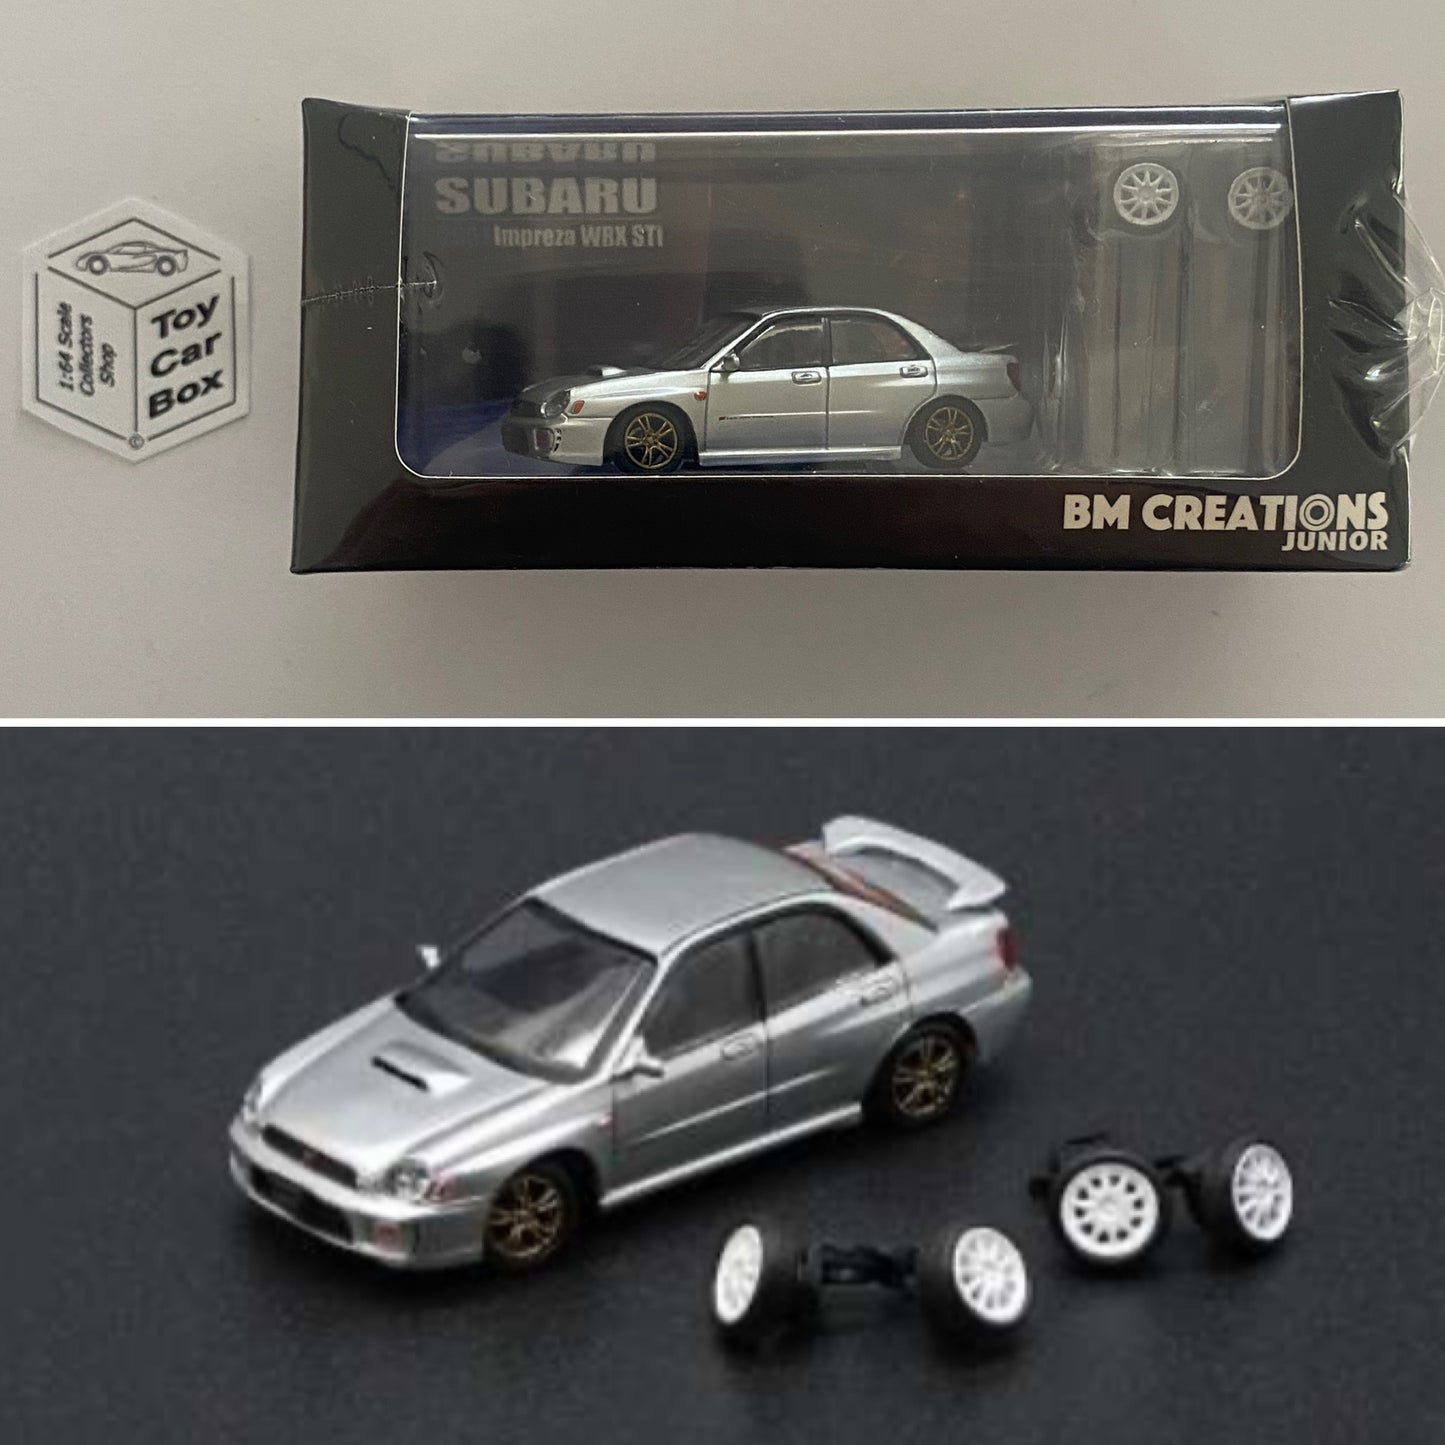 BM CREATIONS - 2001 Subaru Impreza WRX STi (1:64 Scale - Silver - RHD) N66